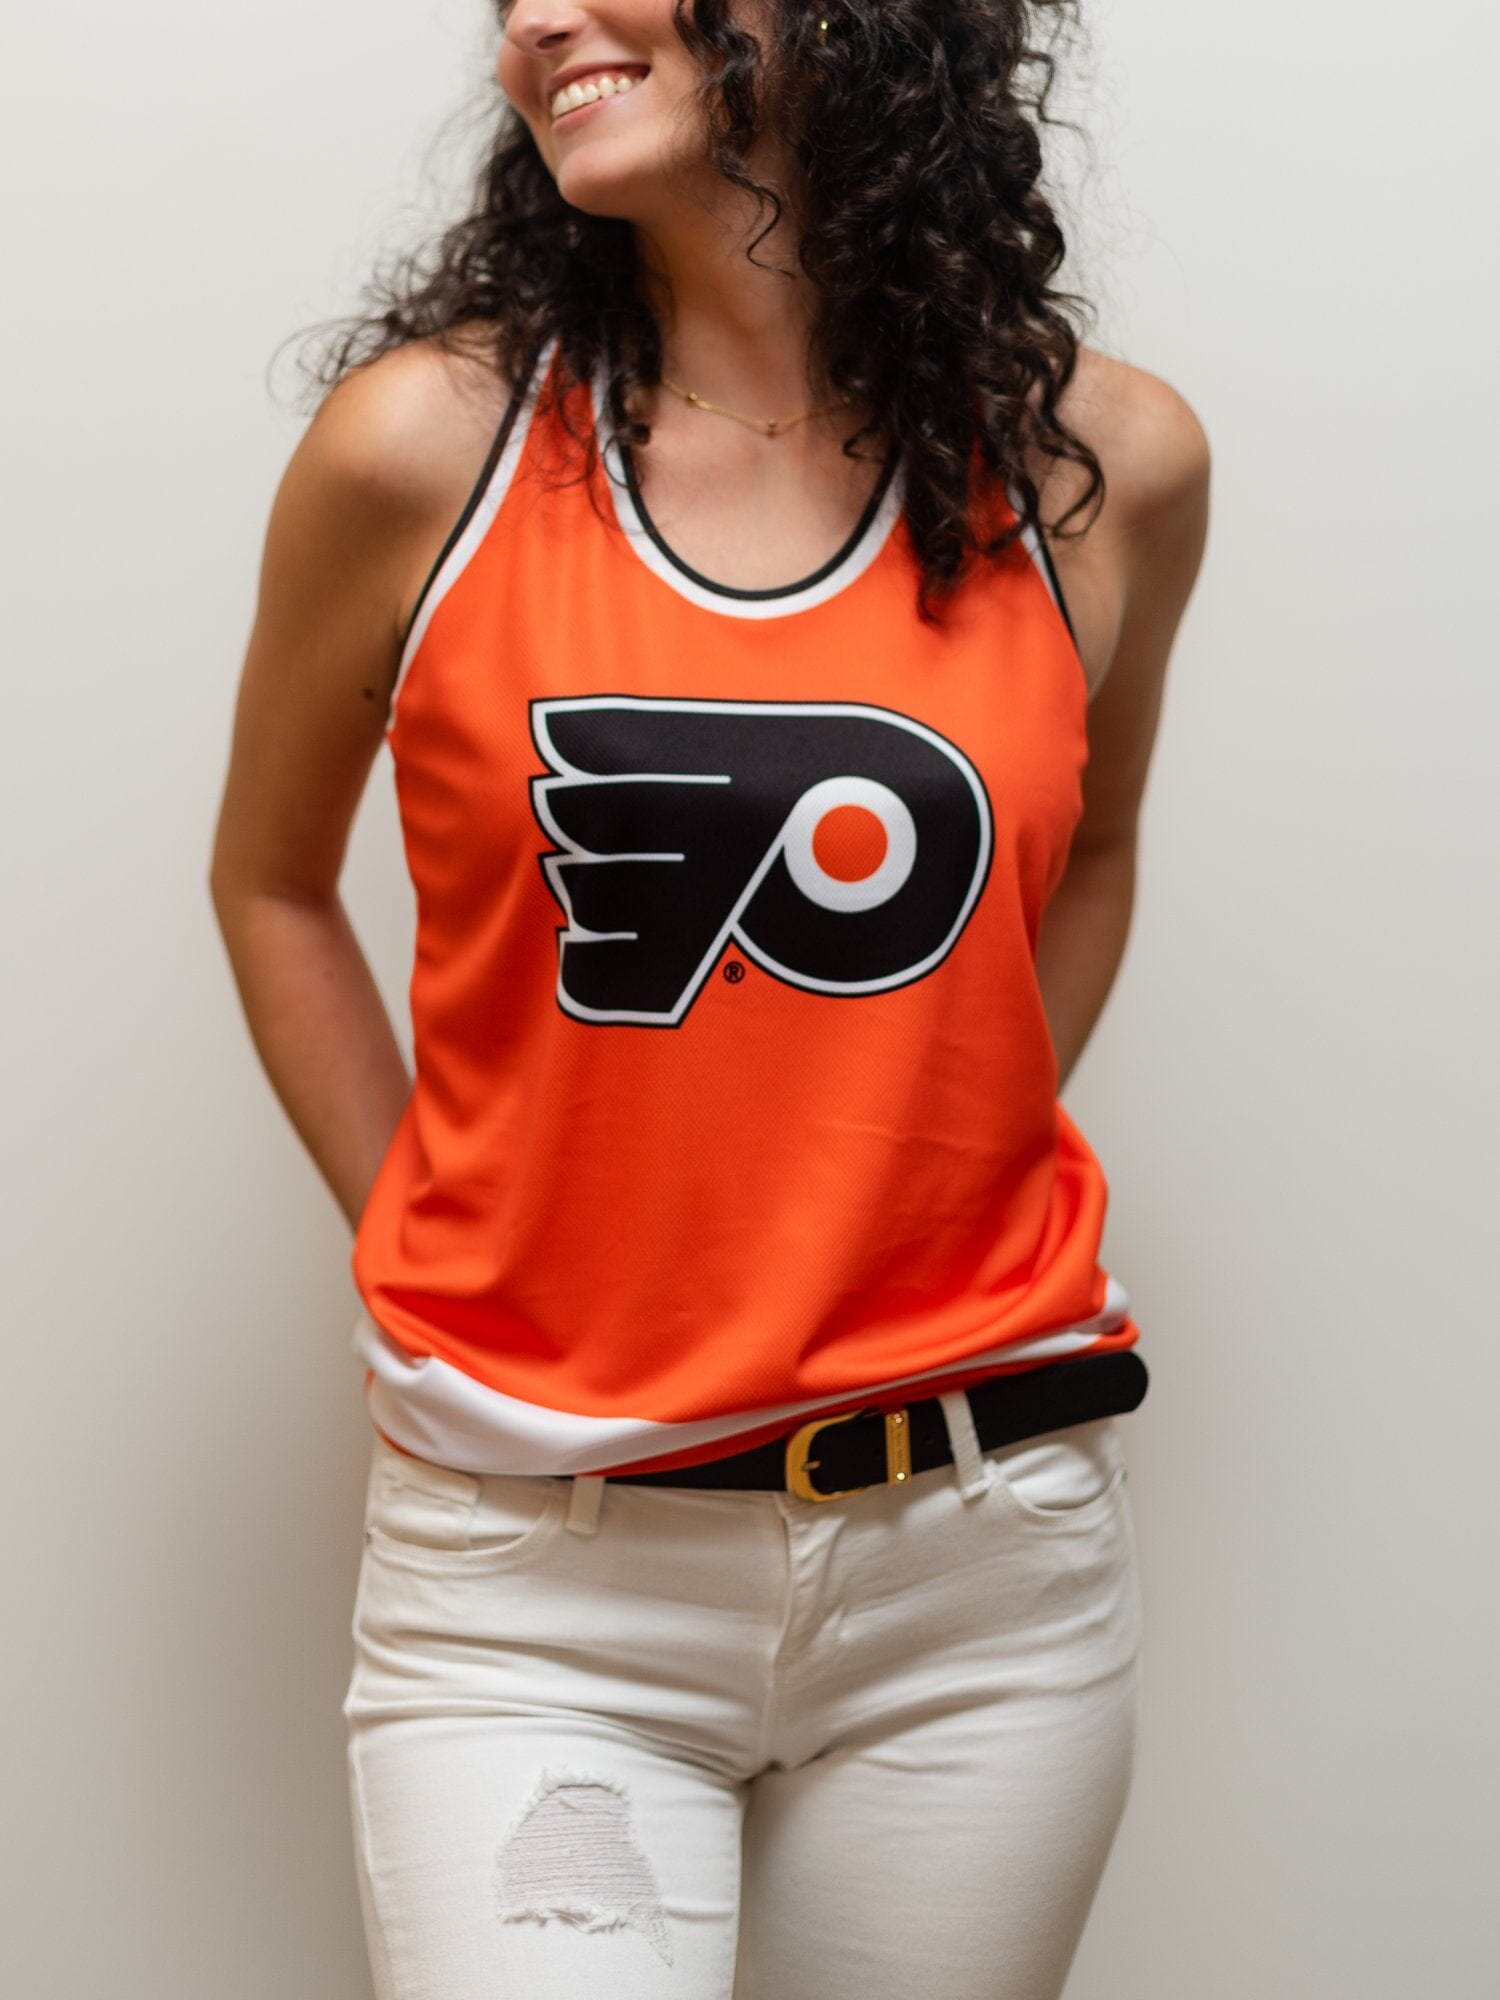  NHL Women's Philadelphia Flyers Reebok Premier Team